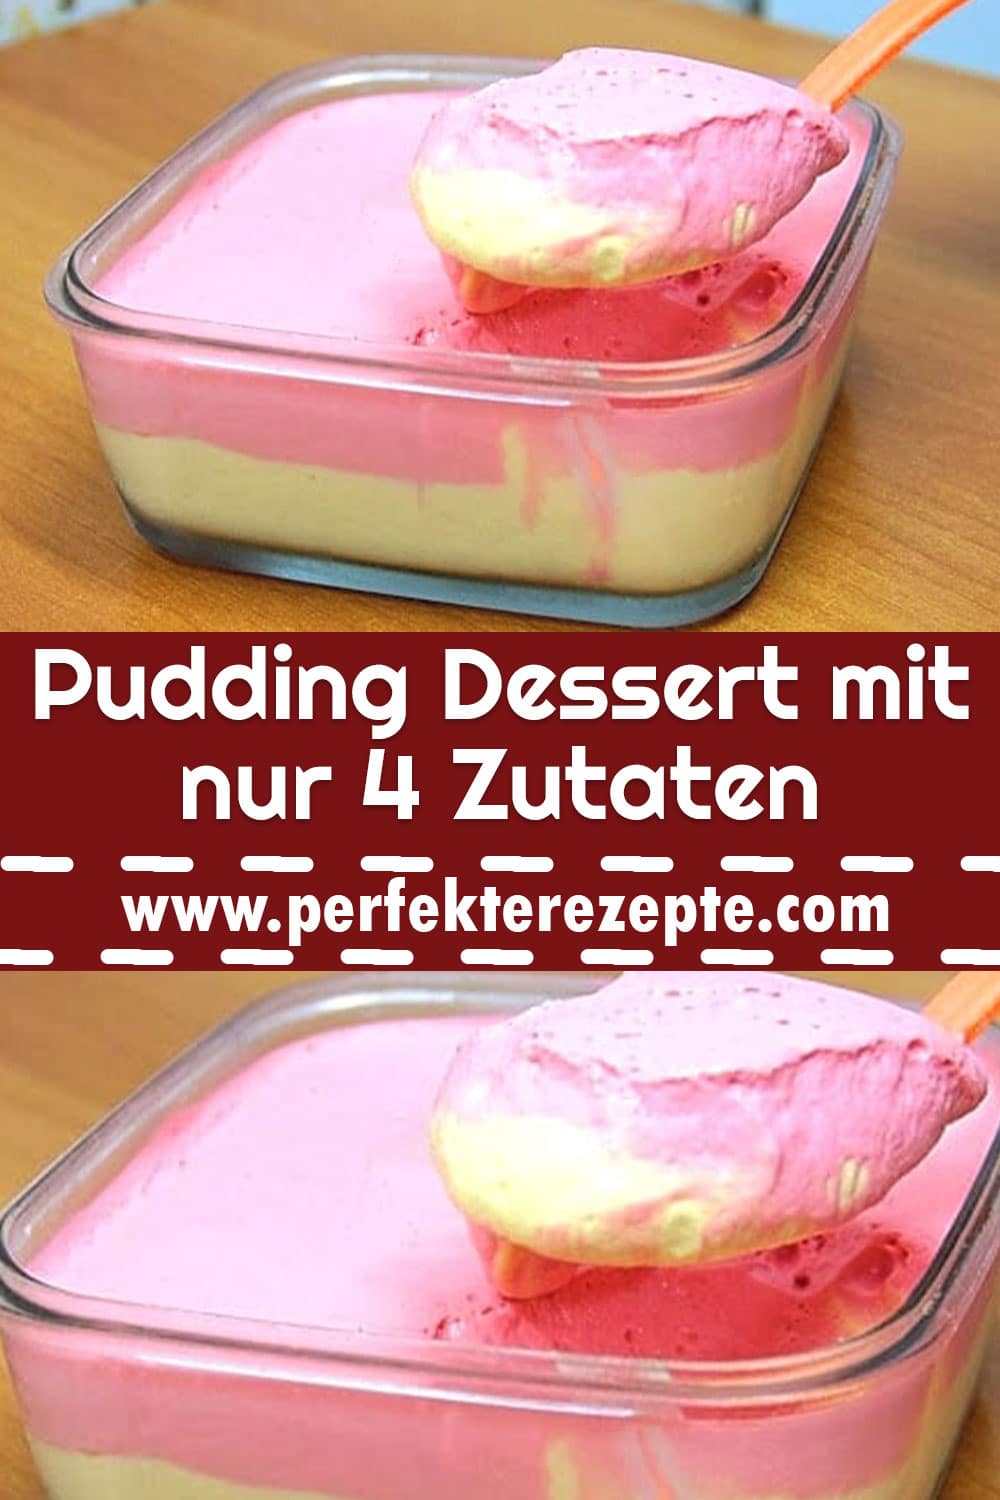 Pudding Dessert mit nur 4 Zutaten